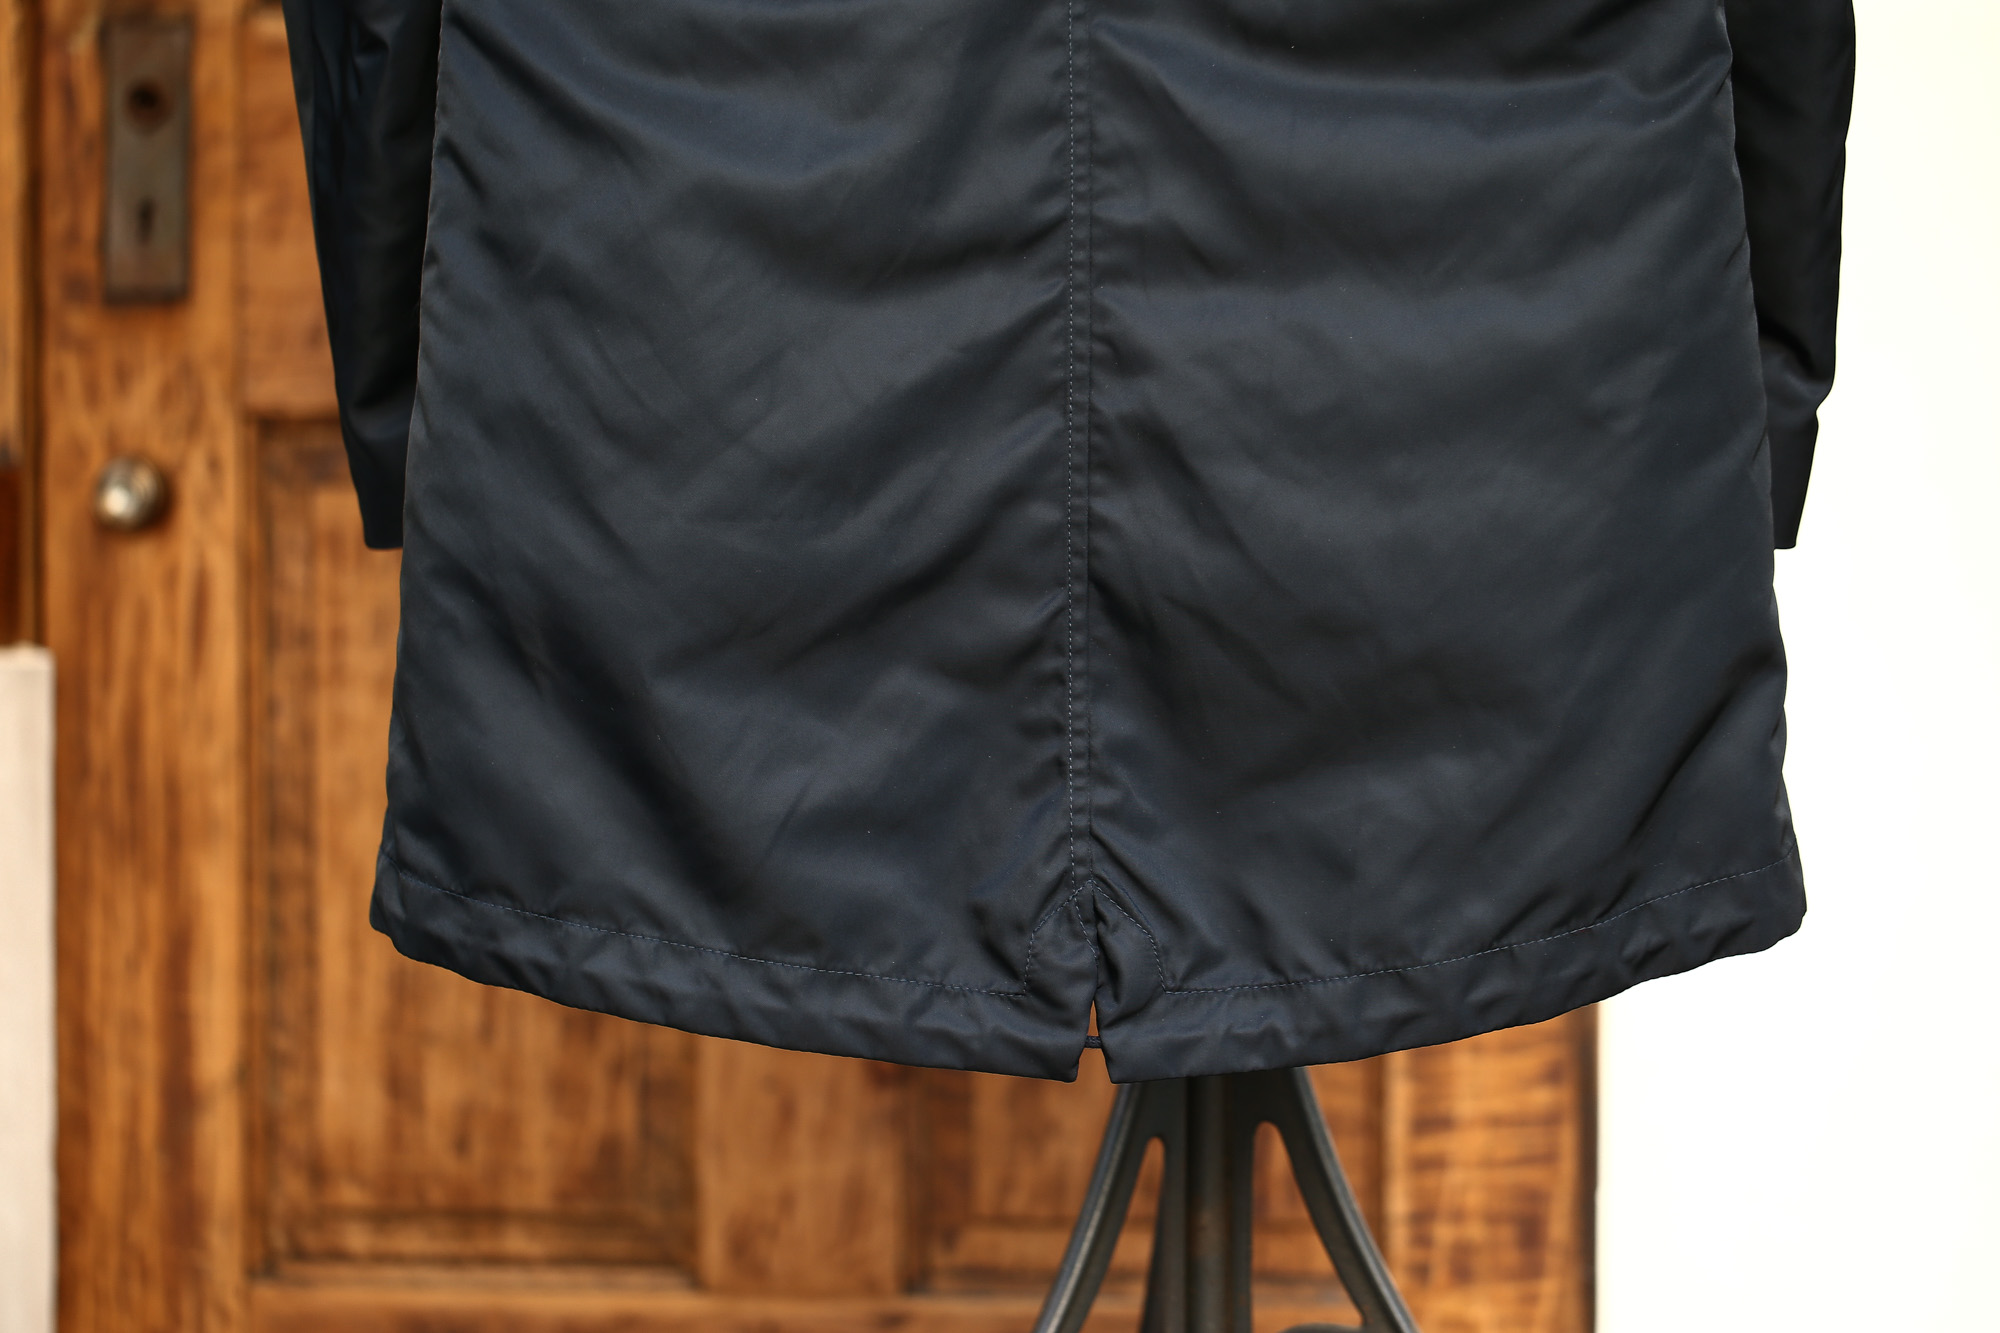 Sealup (シーラップ) M51 Mods coat (M51 モッズコート) サーモアライニング ダウンライナー付き モッズコート BLACK (ブラック・36) Made in italy (イタリア製) 2017 秋冬新作 sealup シーラップ 愛知 名古屋 Alto e Diritto アルト エ デリット